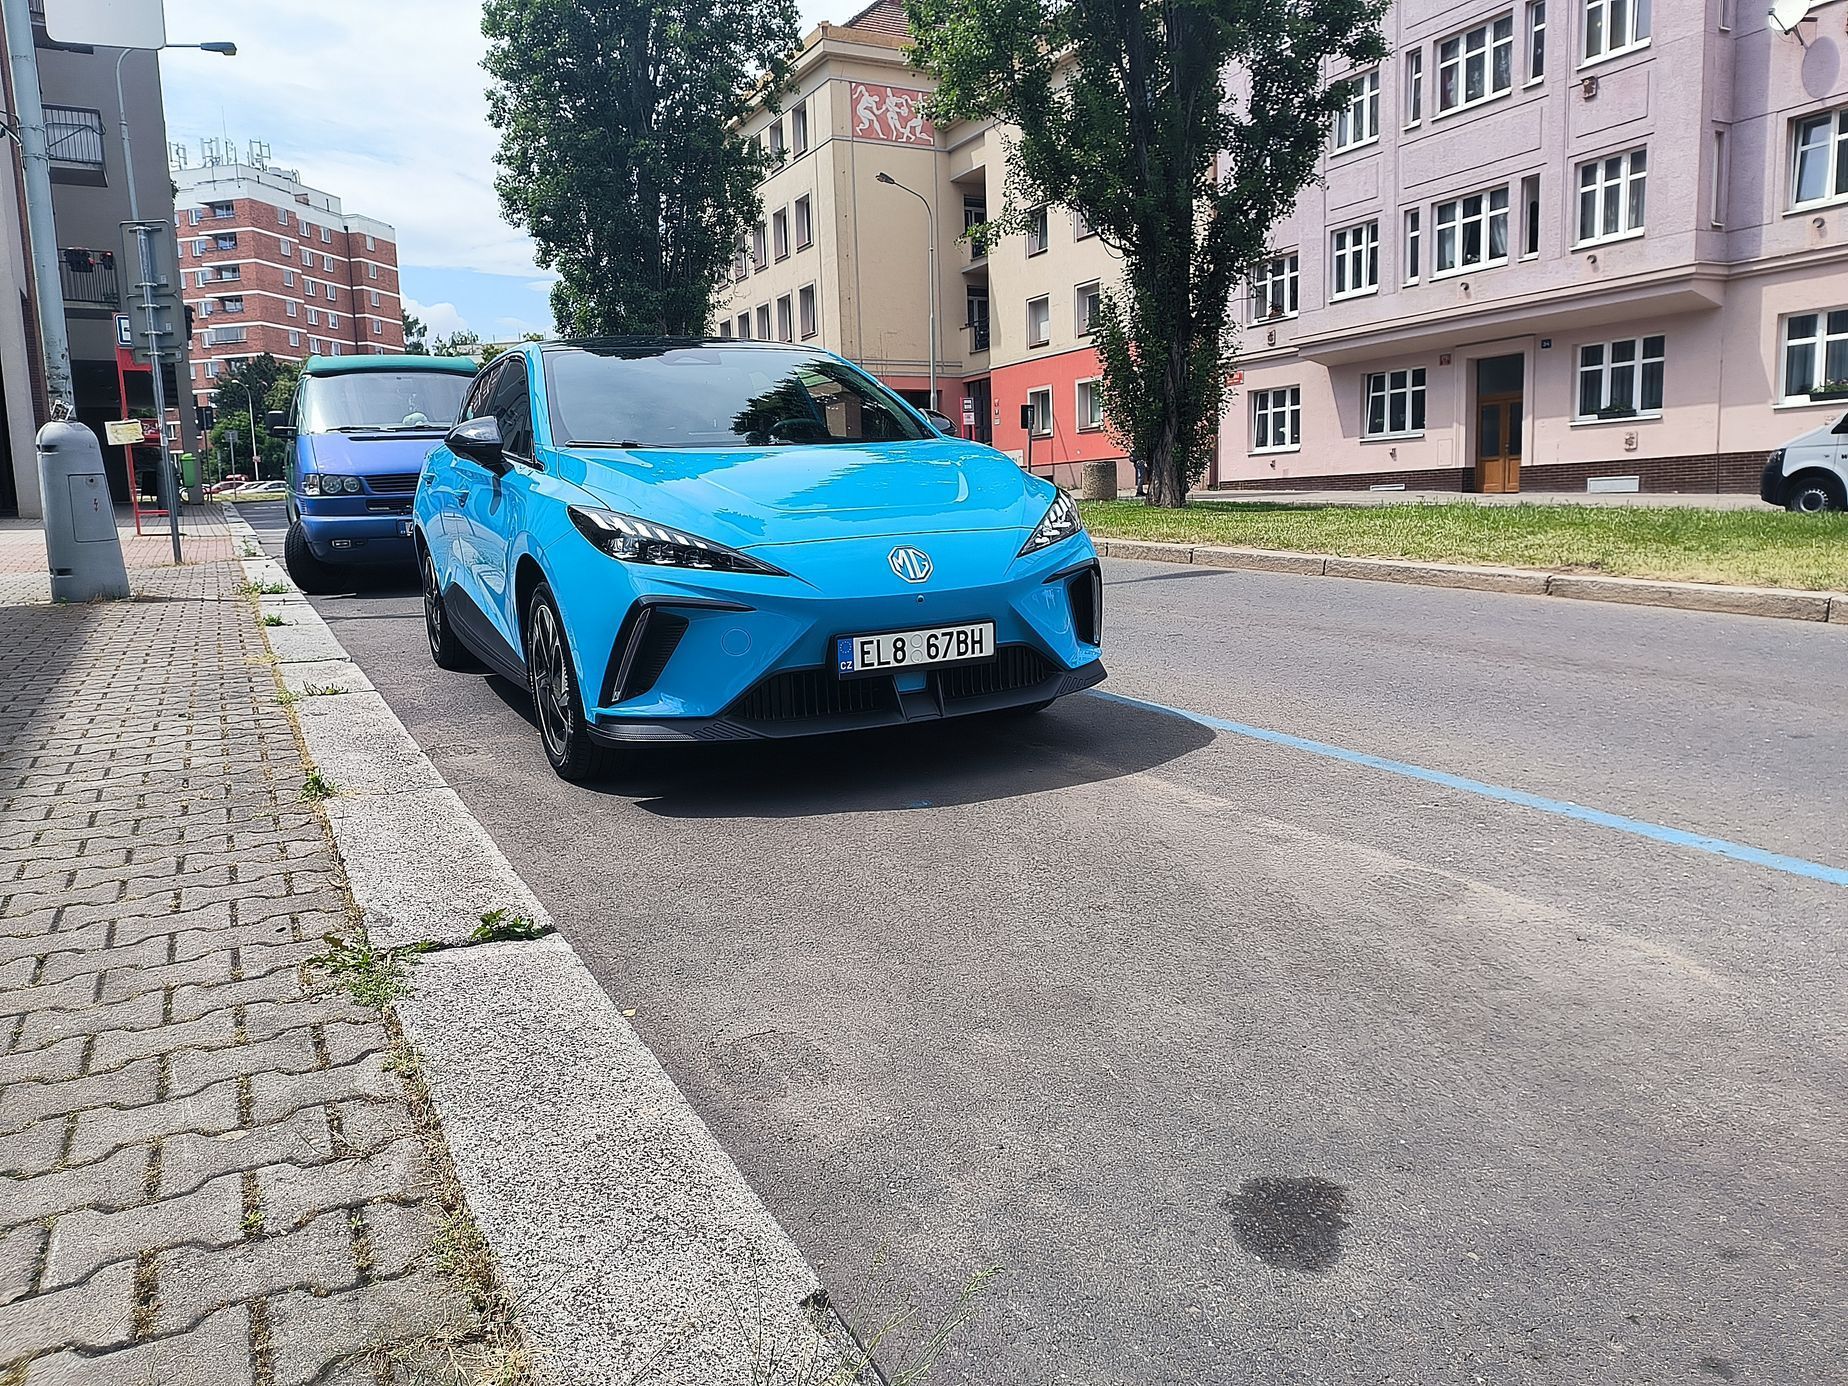 modré zóny parkování elektromobilů v Praze